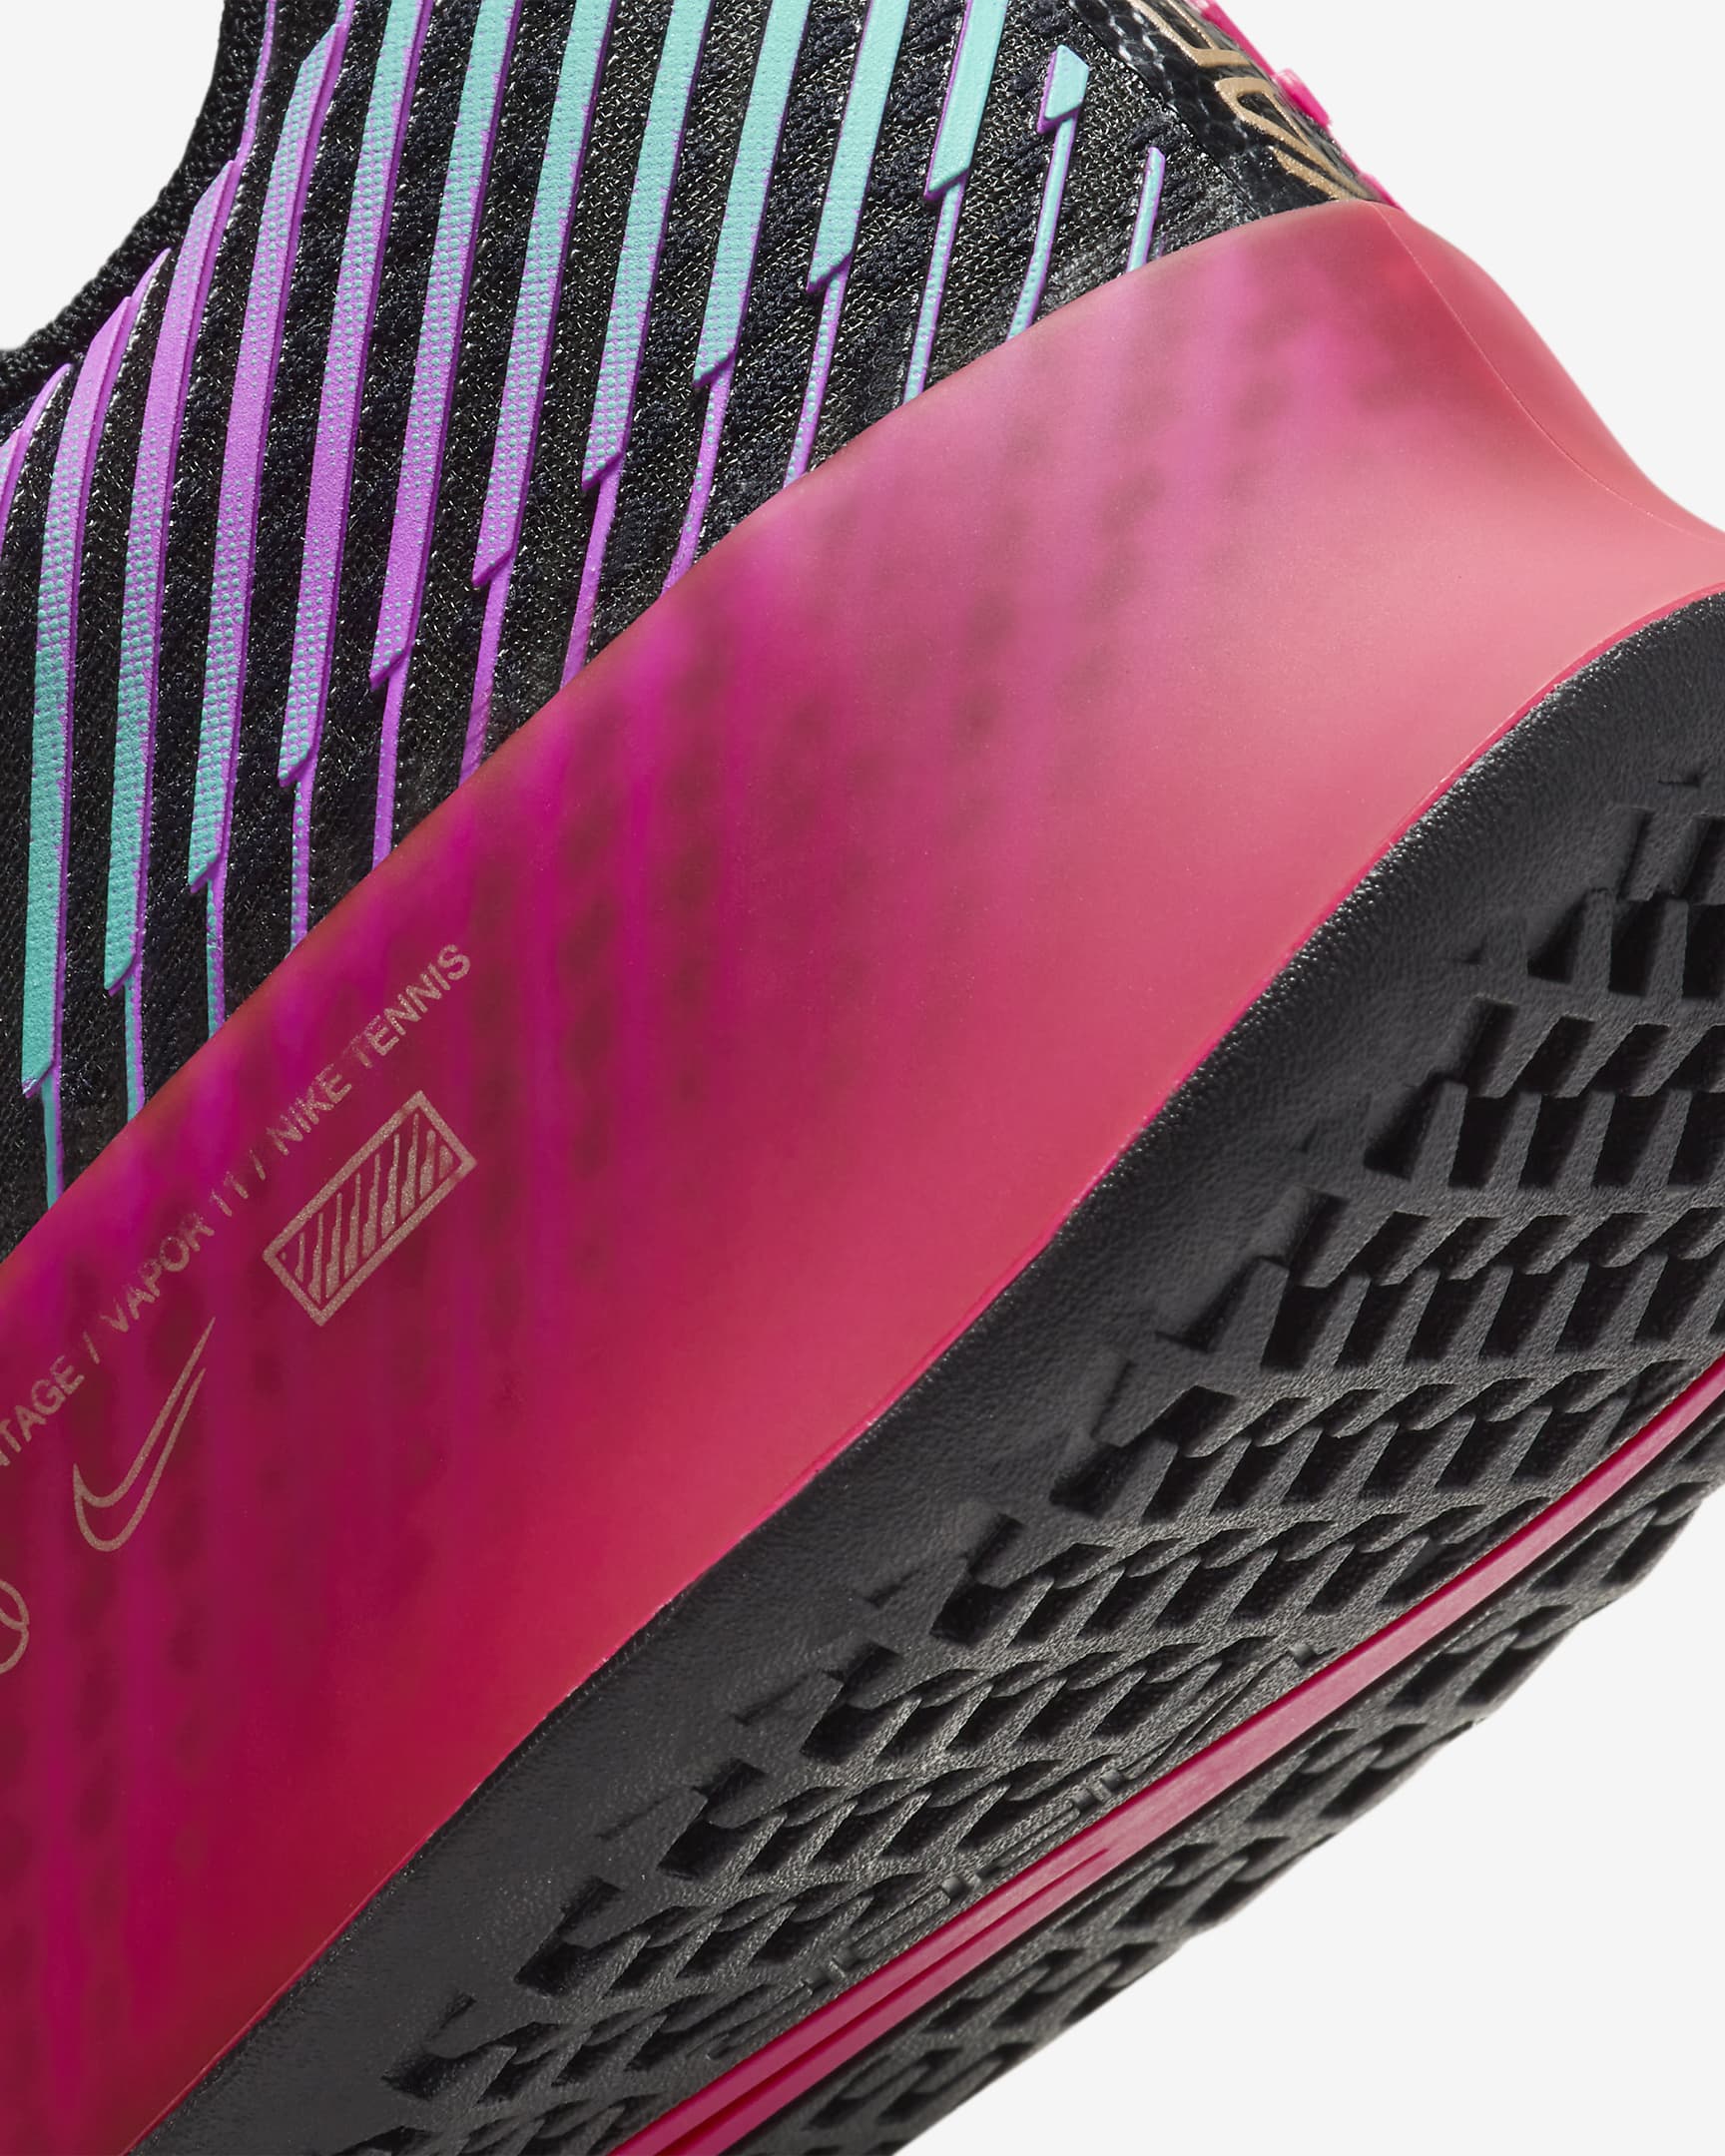 Calzado de tenis para cancha dura NikeCourt Air Zoom Vapor 11 Premium ...